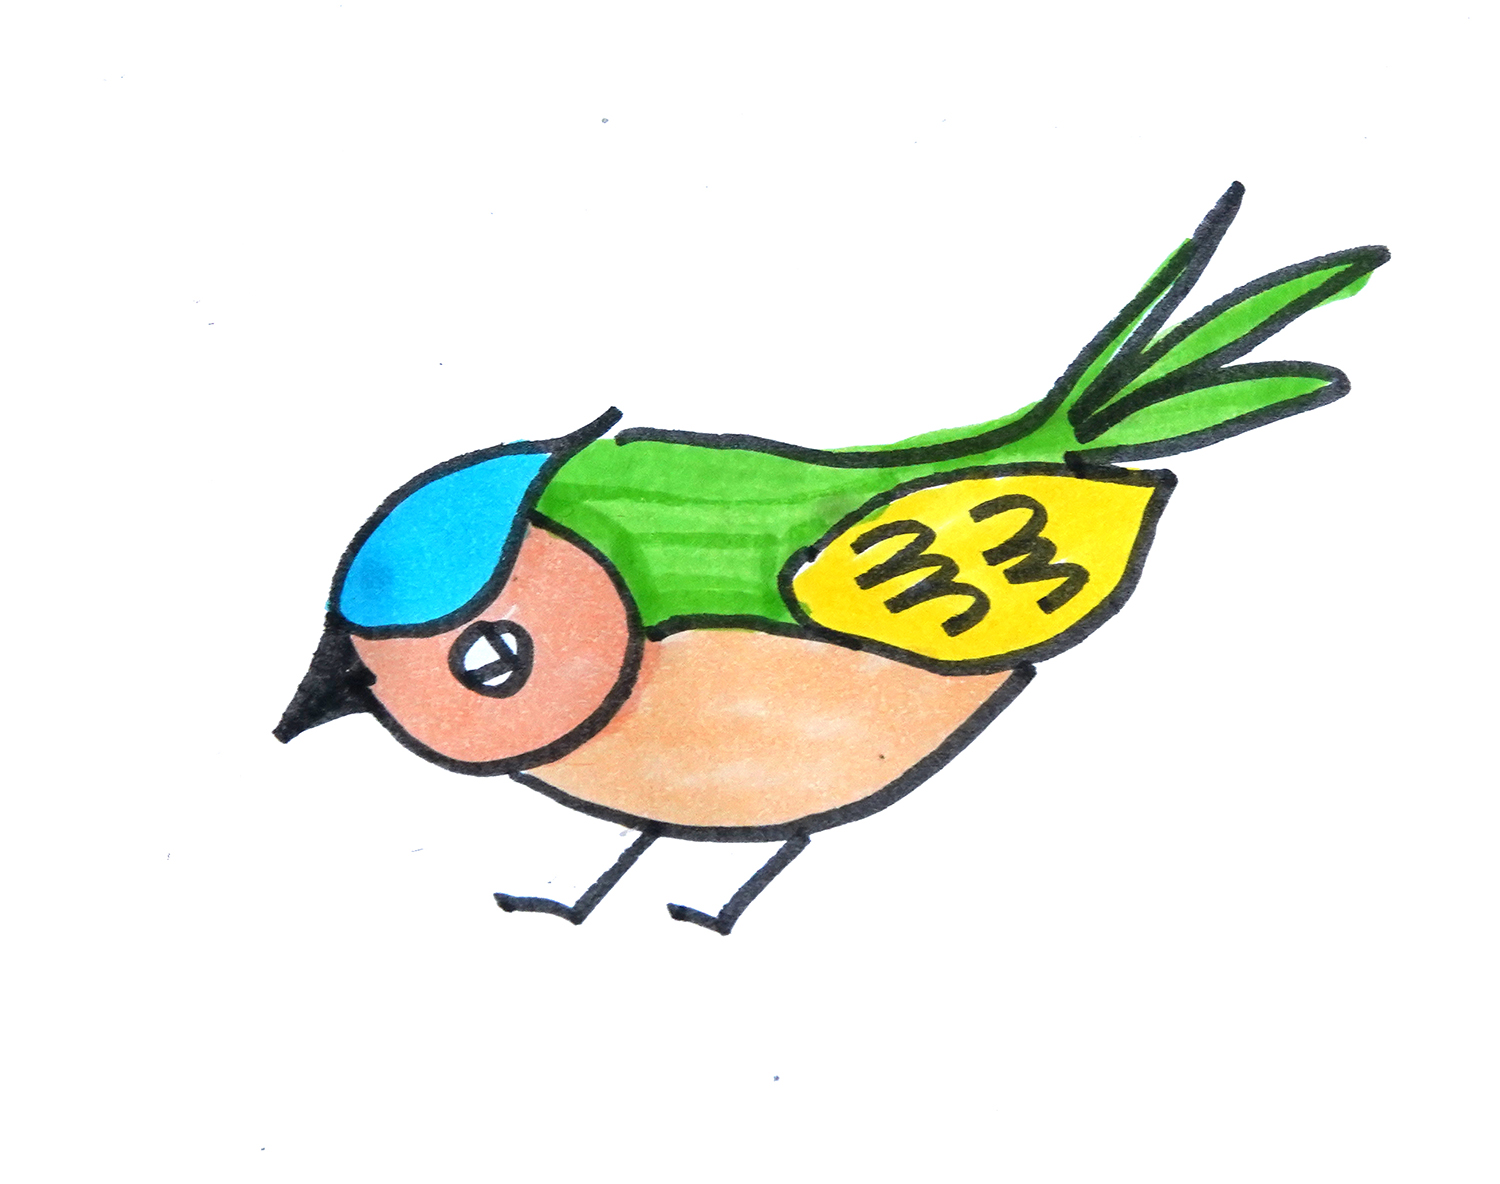 简单的幼儿简笔画 可爱的小鸟简笔画过程图 肉丁儿童网